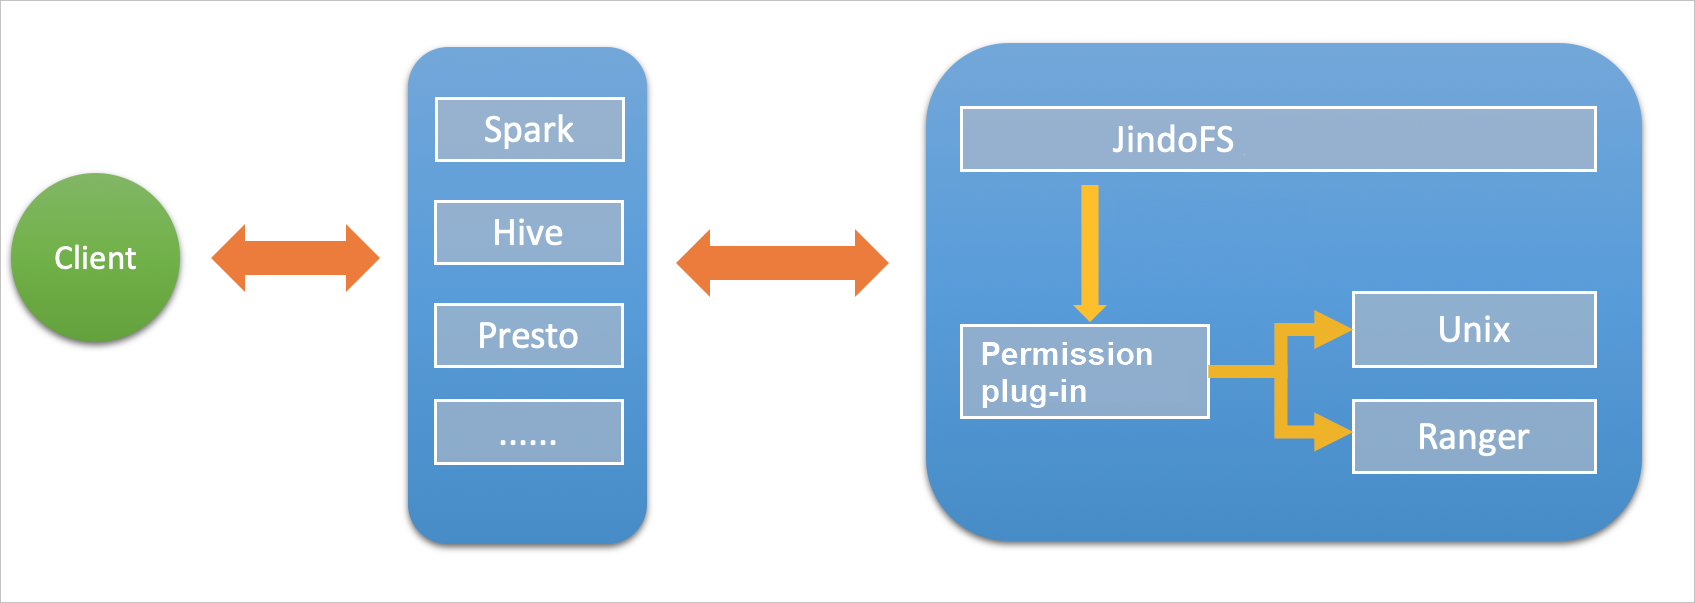 JindoFS permissions